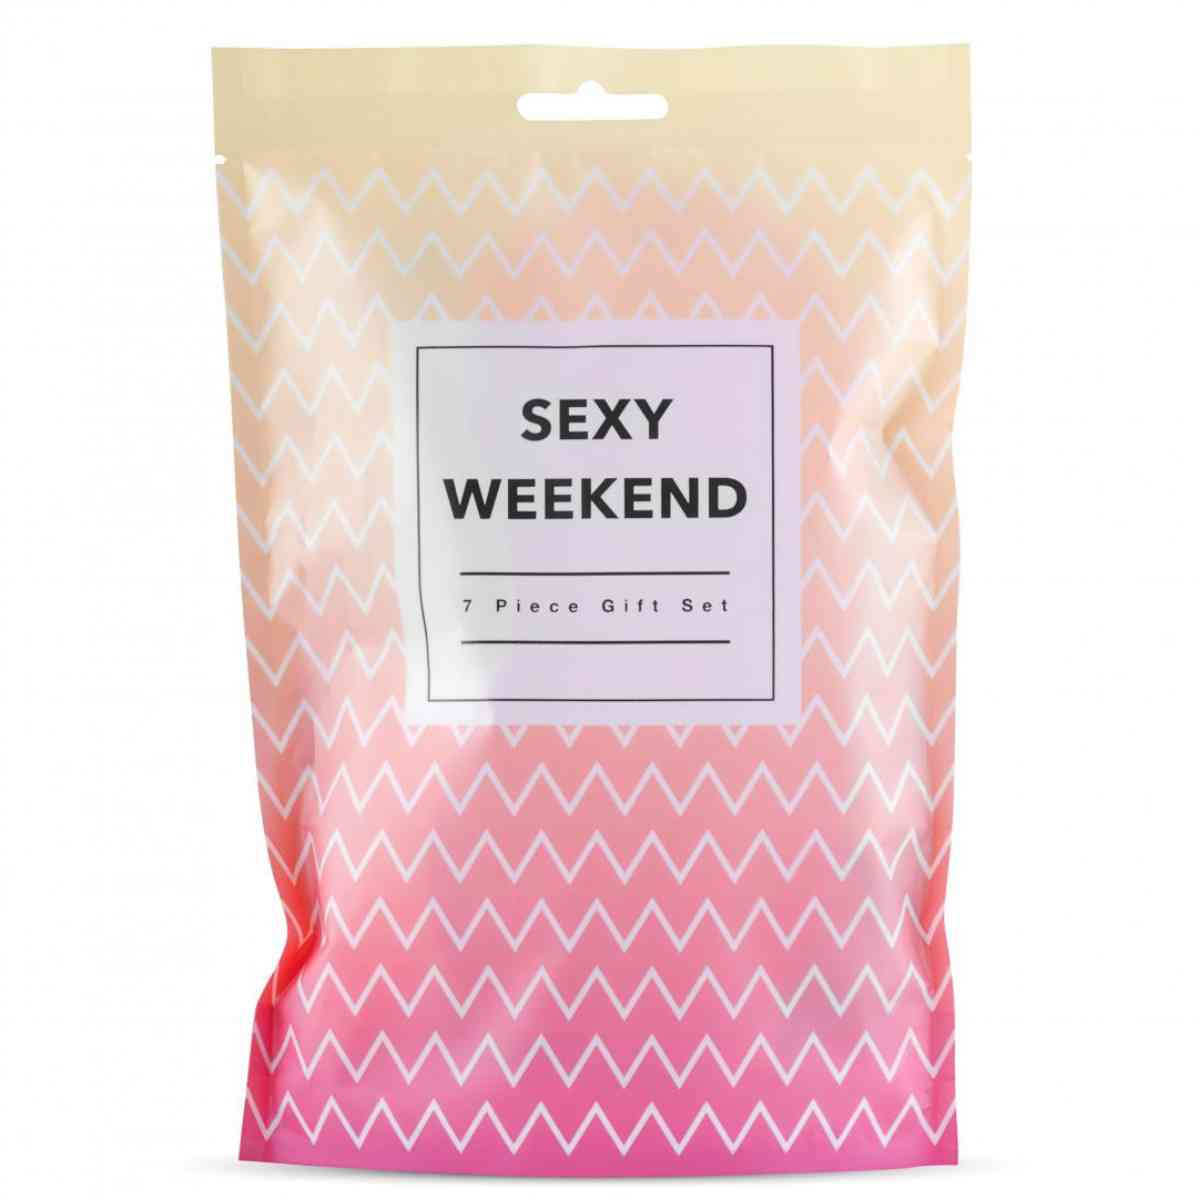 Erotisches Geschenkset "Sexy Weekend" Verpackung